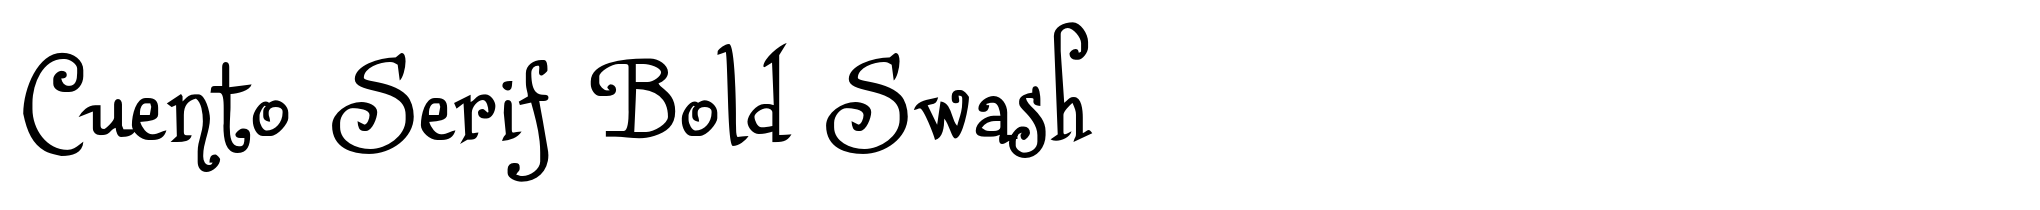 Cuento Serif Bold Swash image